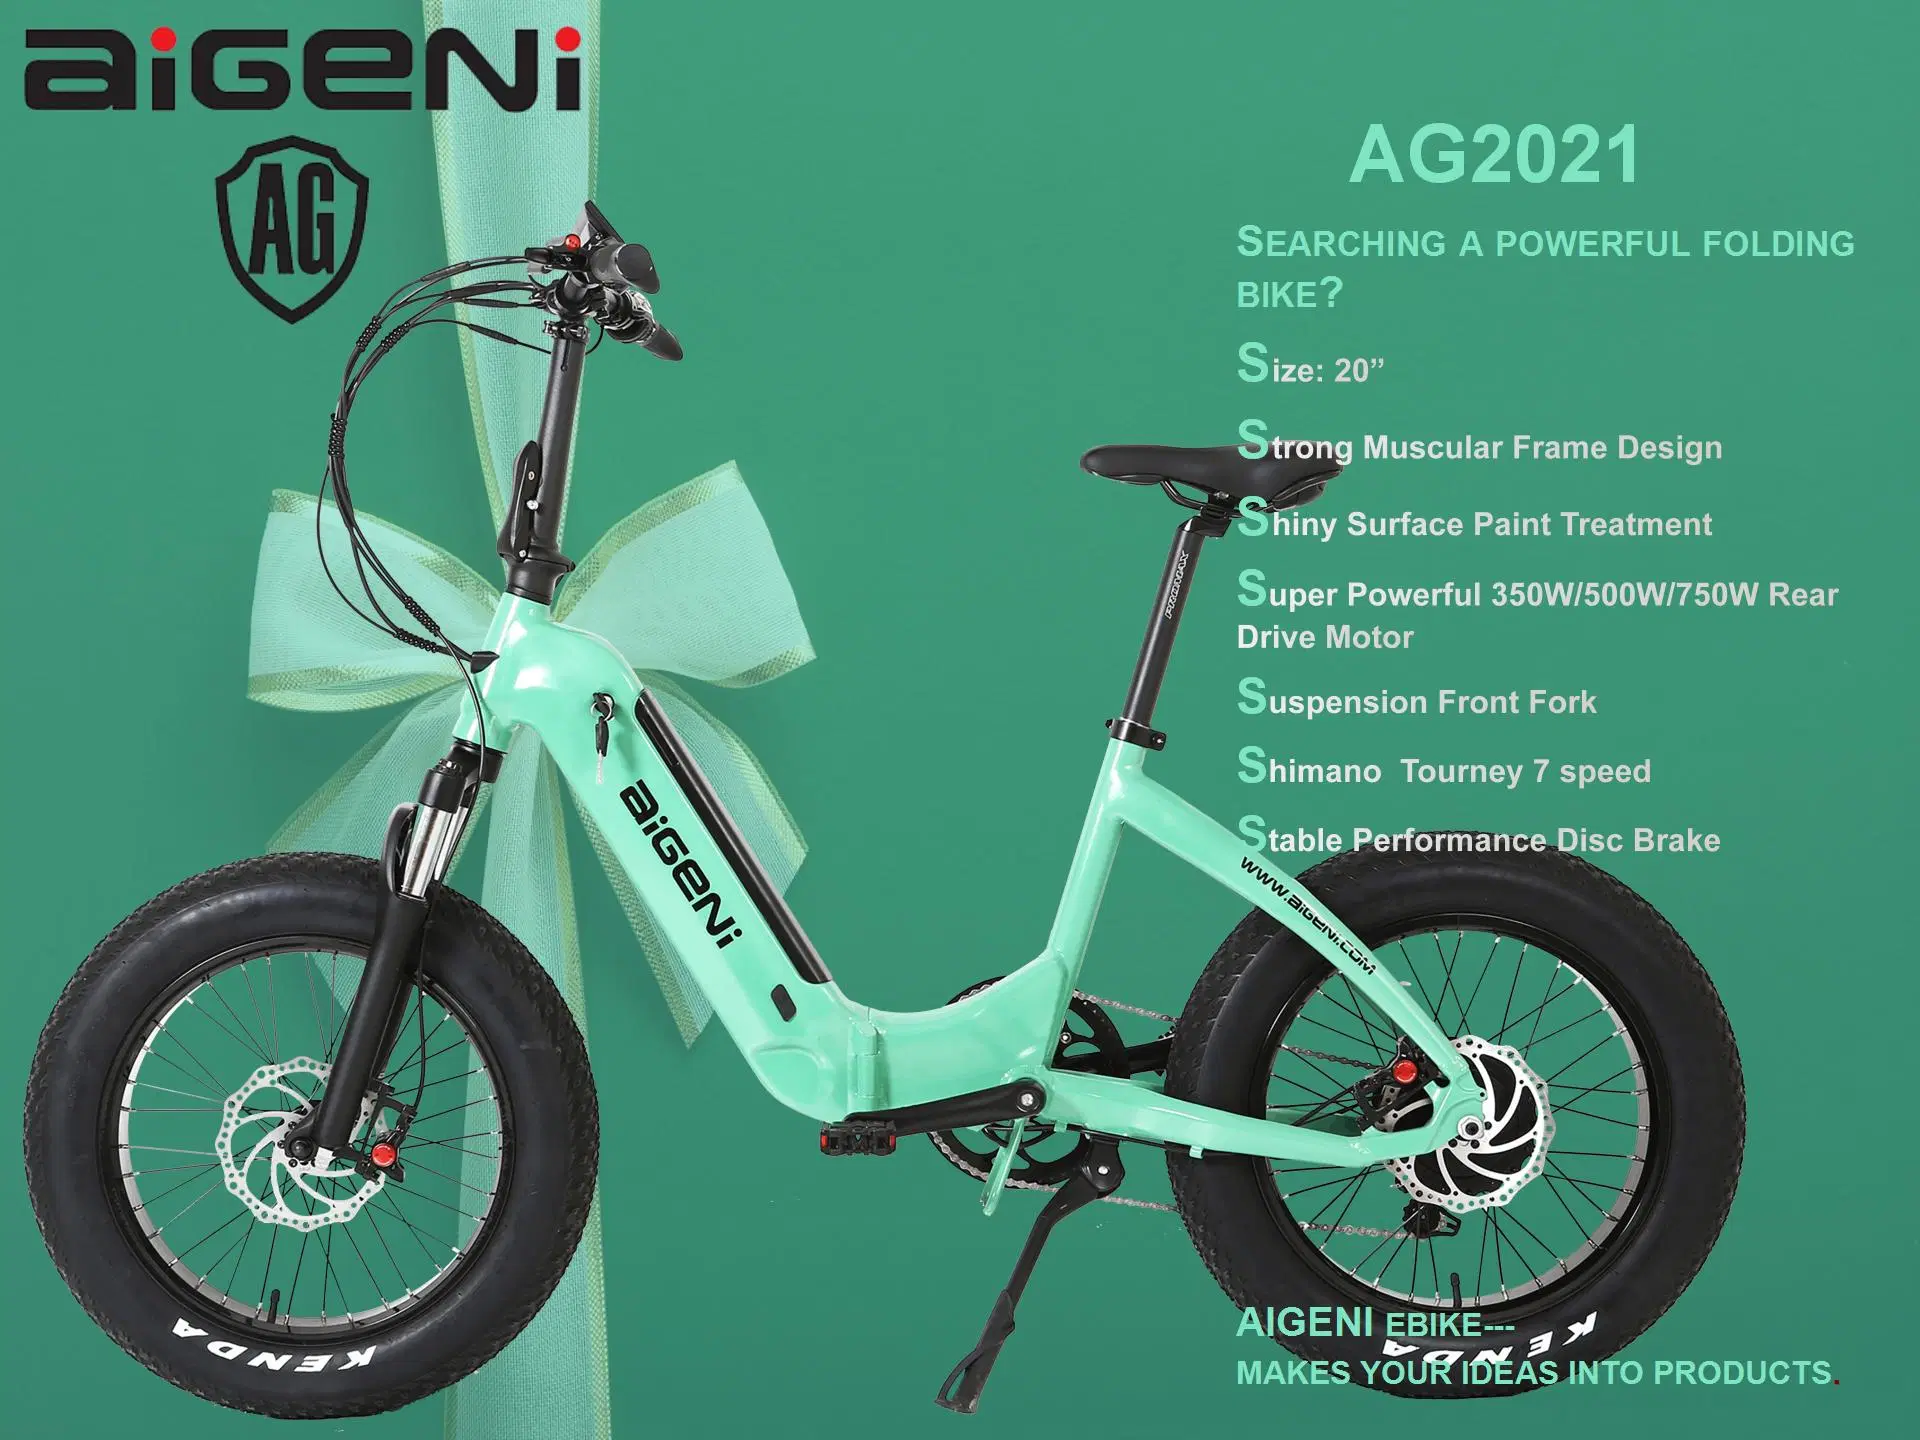 Pneu adiposo de 20'' Verde mate Mini bicicleta elétrica dobrável para Venda AG2021